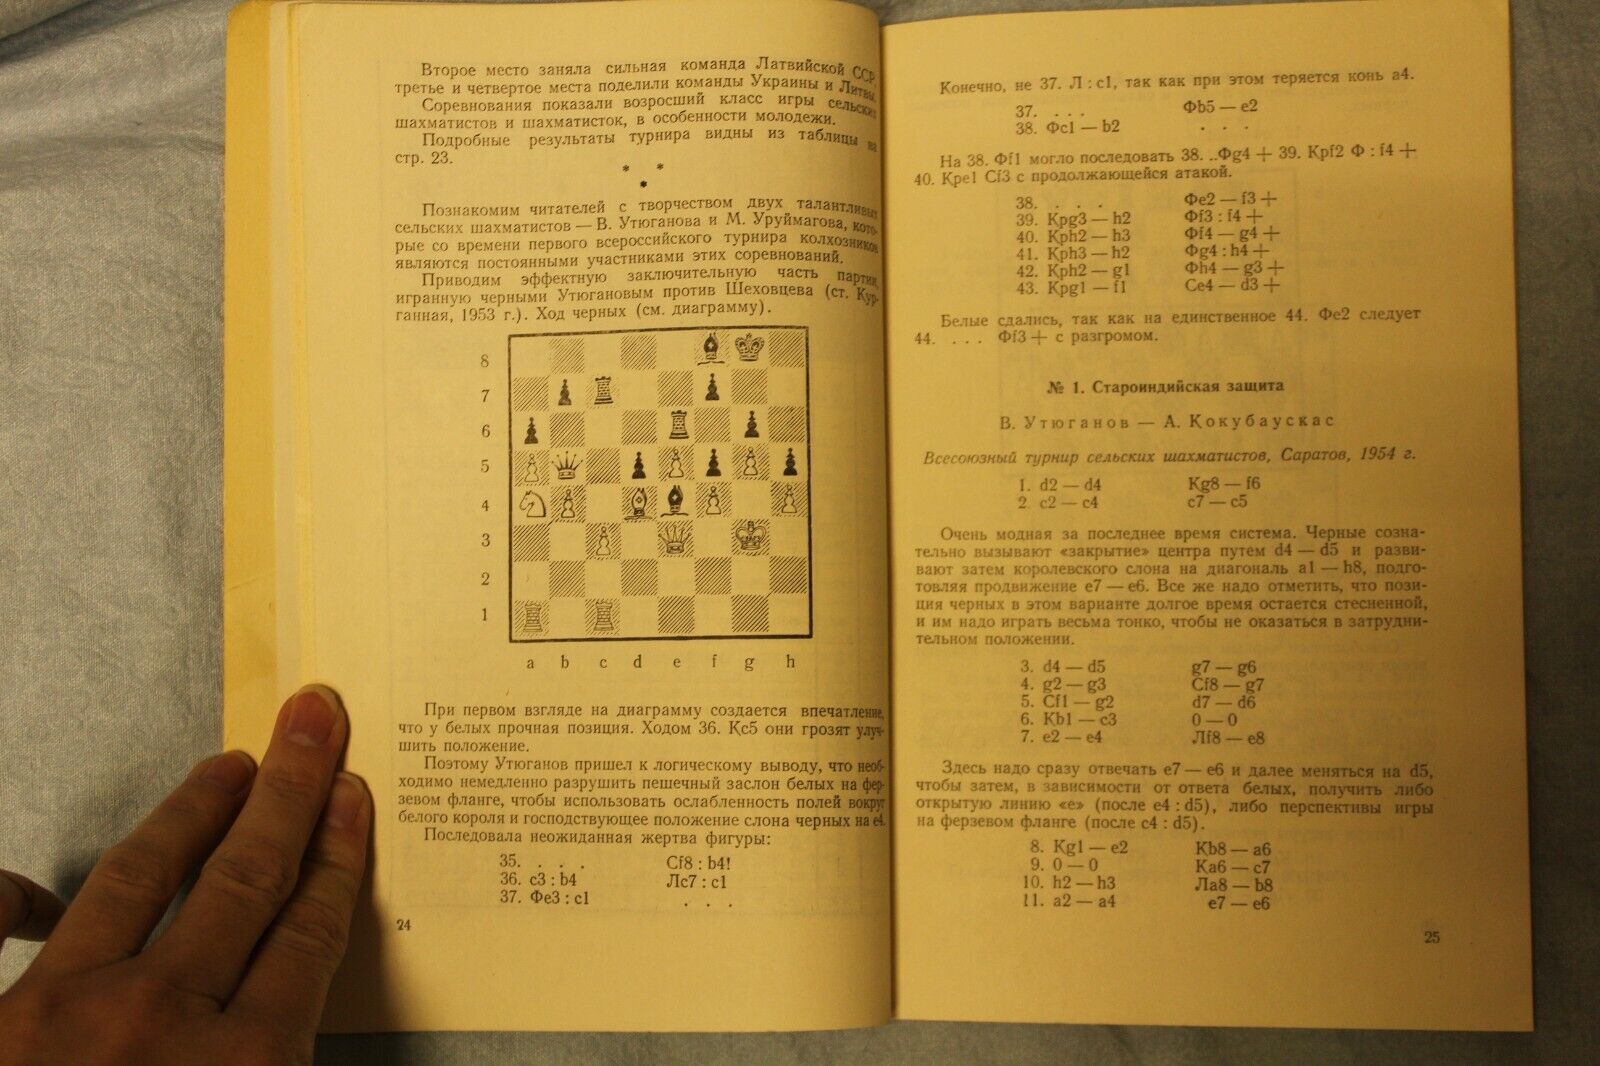 10957.Book Baturinsky-Karpov library:Singed Rochlin to Baturinsky, Village Chess. 1955